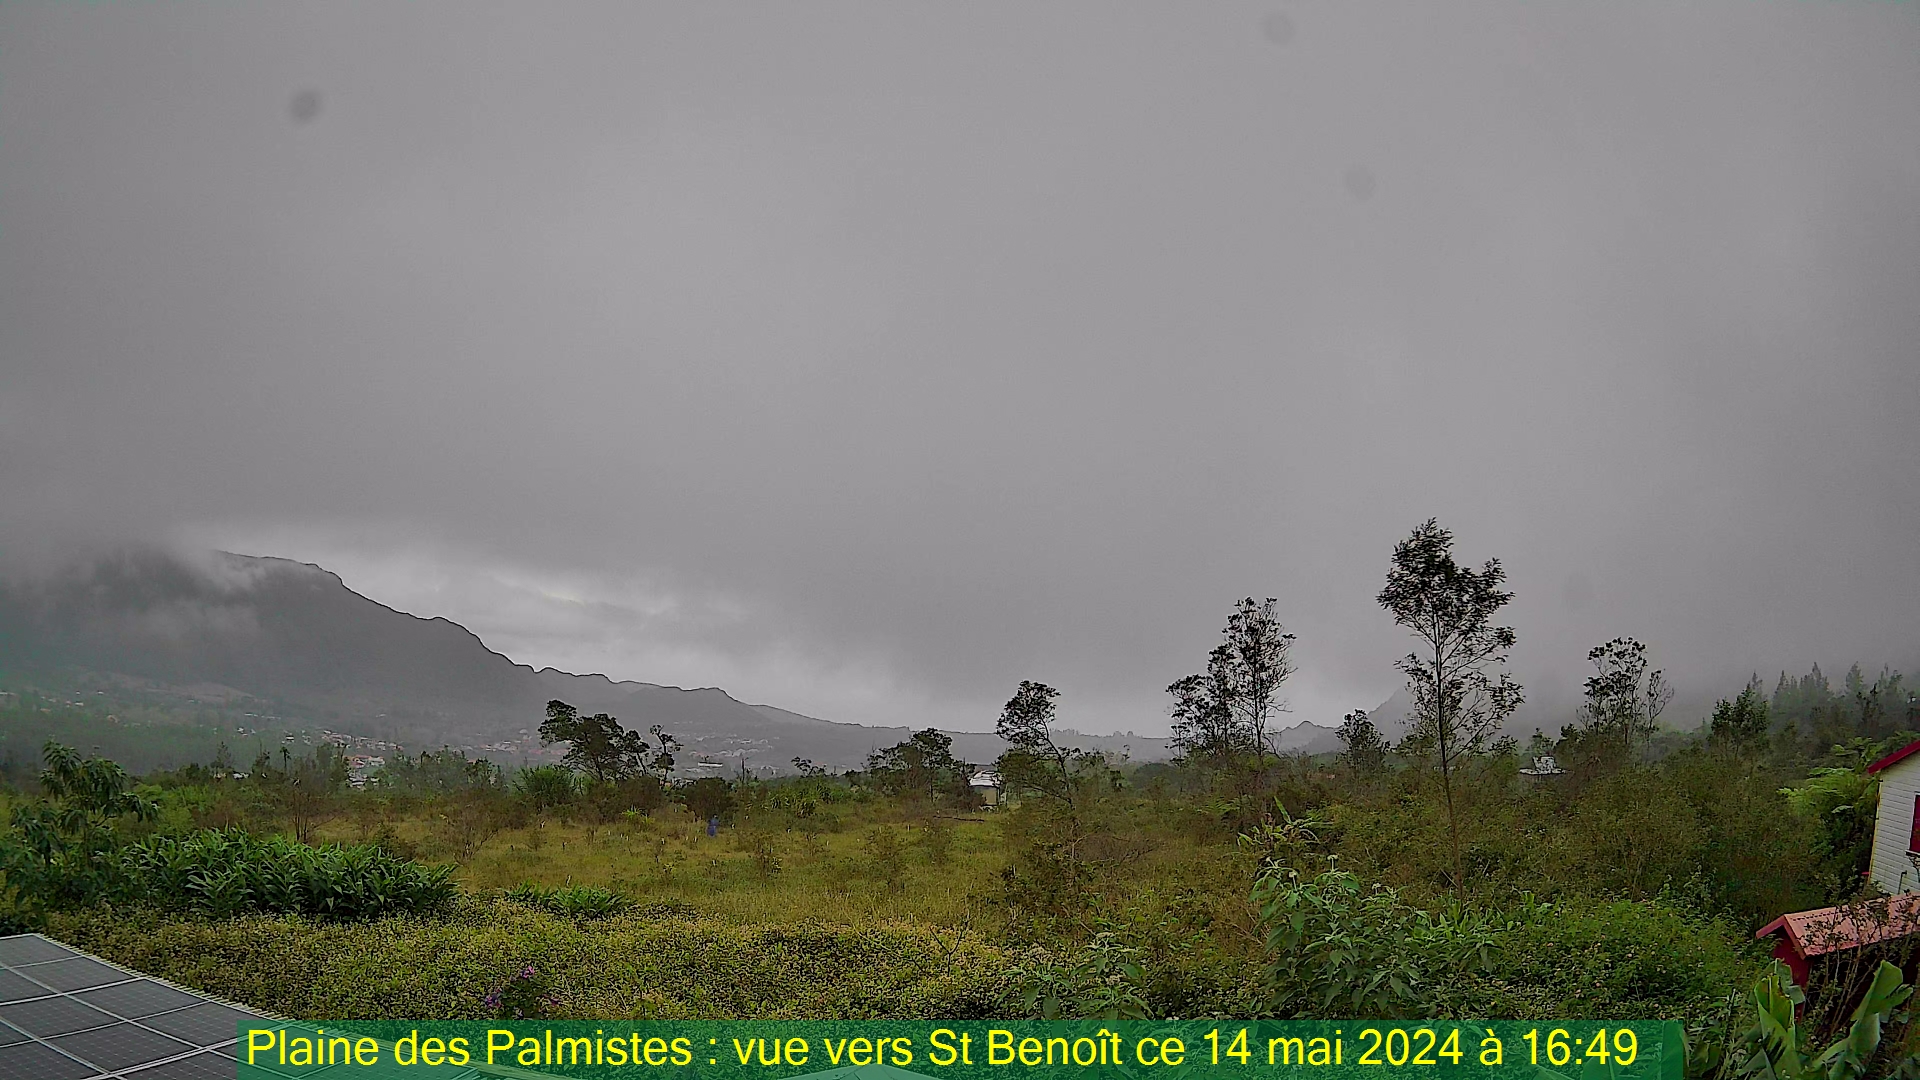 Saint-Denis (Réunion) Do. 16:50